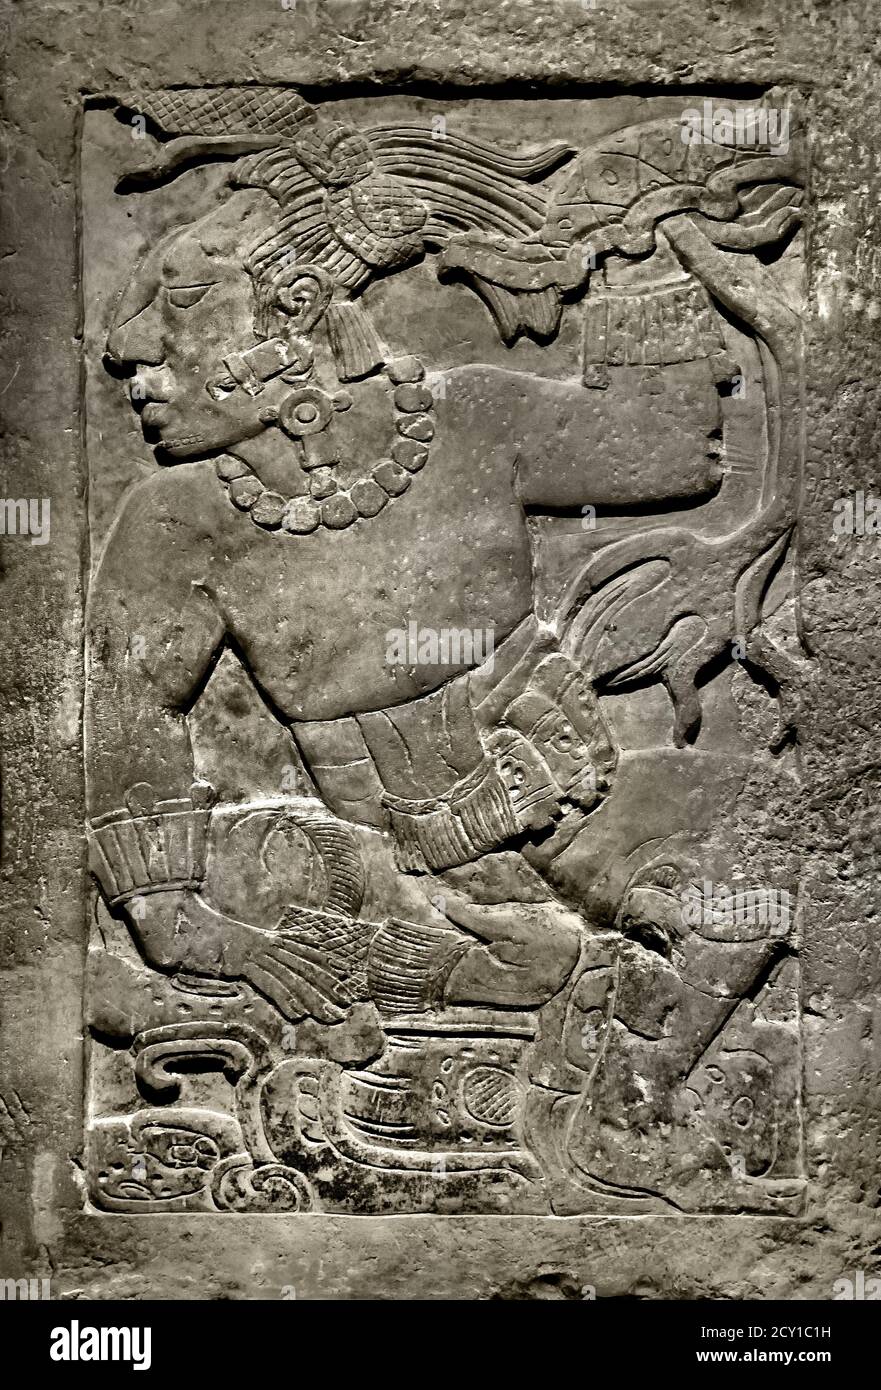 La stela di Madrid (scultura in pietra vulcanica) 600 d.C. - 800 d.C. che sosteneva un trono di un palazzo costruito dalla cultura maya a Palenque, situato in quello che oggi è lo stato messicano del Chiapas, vicino al fiume Usumacinta. ( la stela di Madrid esposta al Museo d'America di Madrid ) Messico messicano Foto Stock